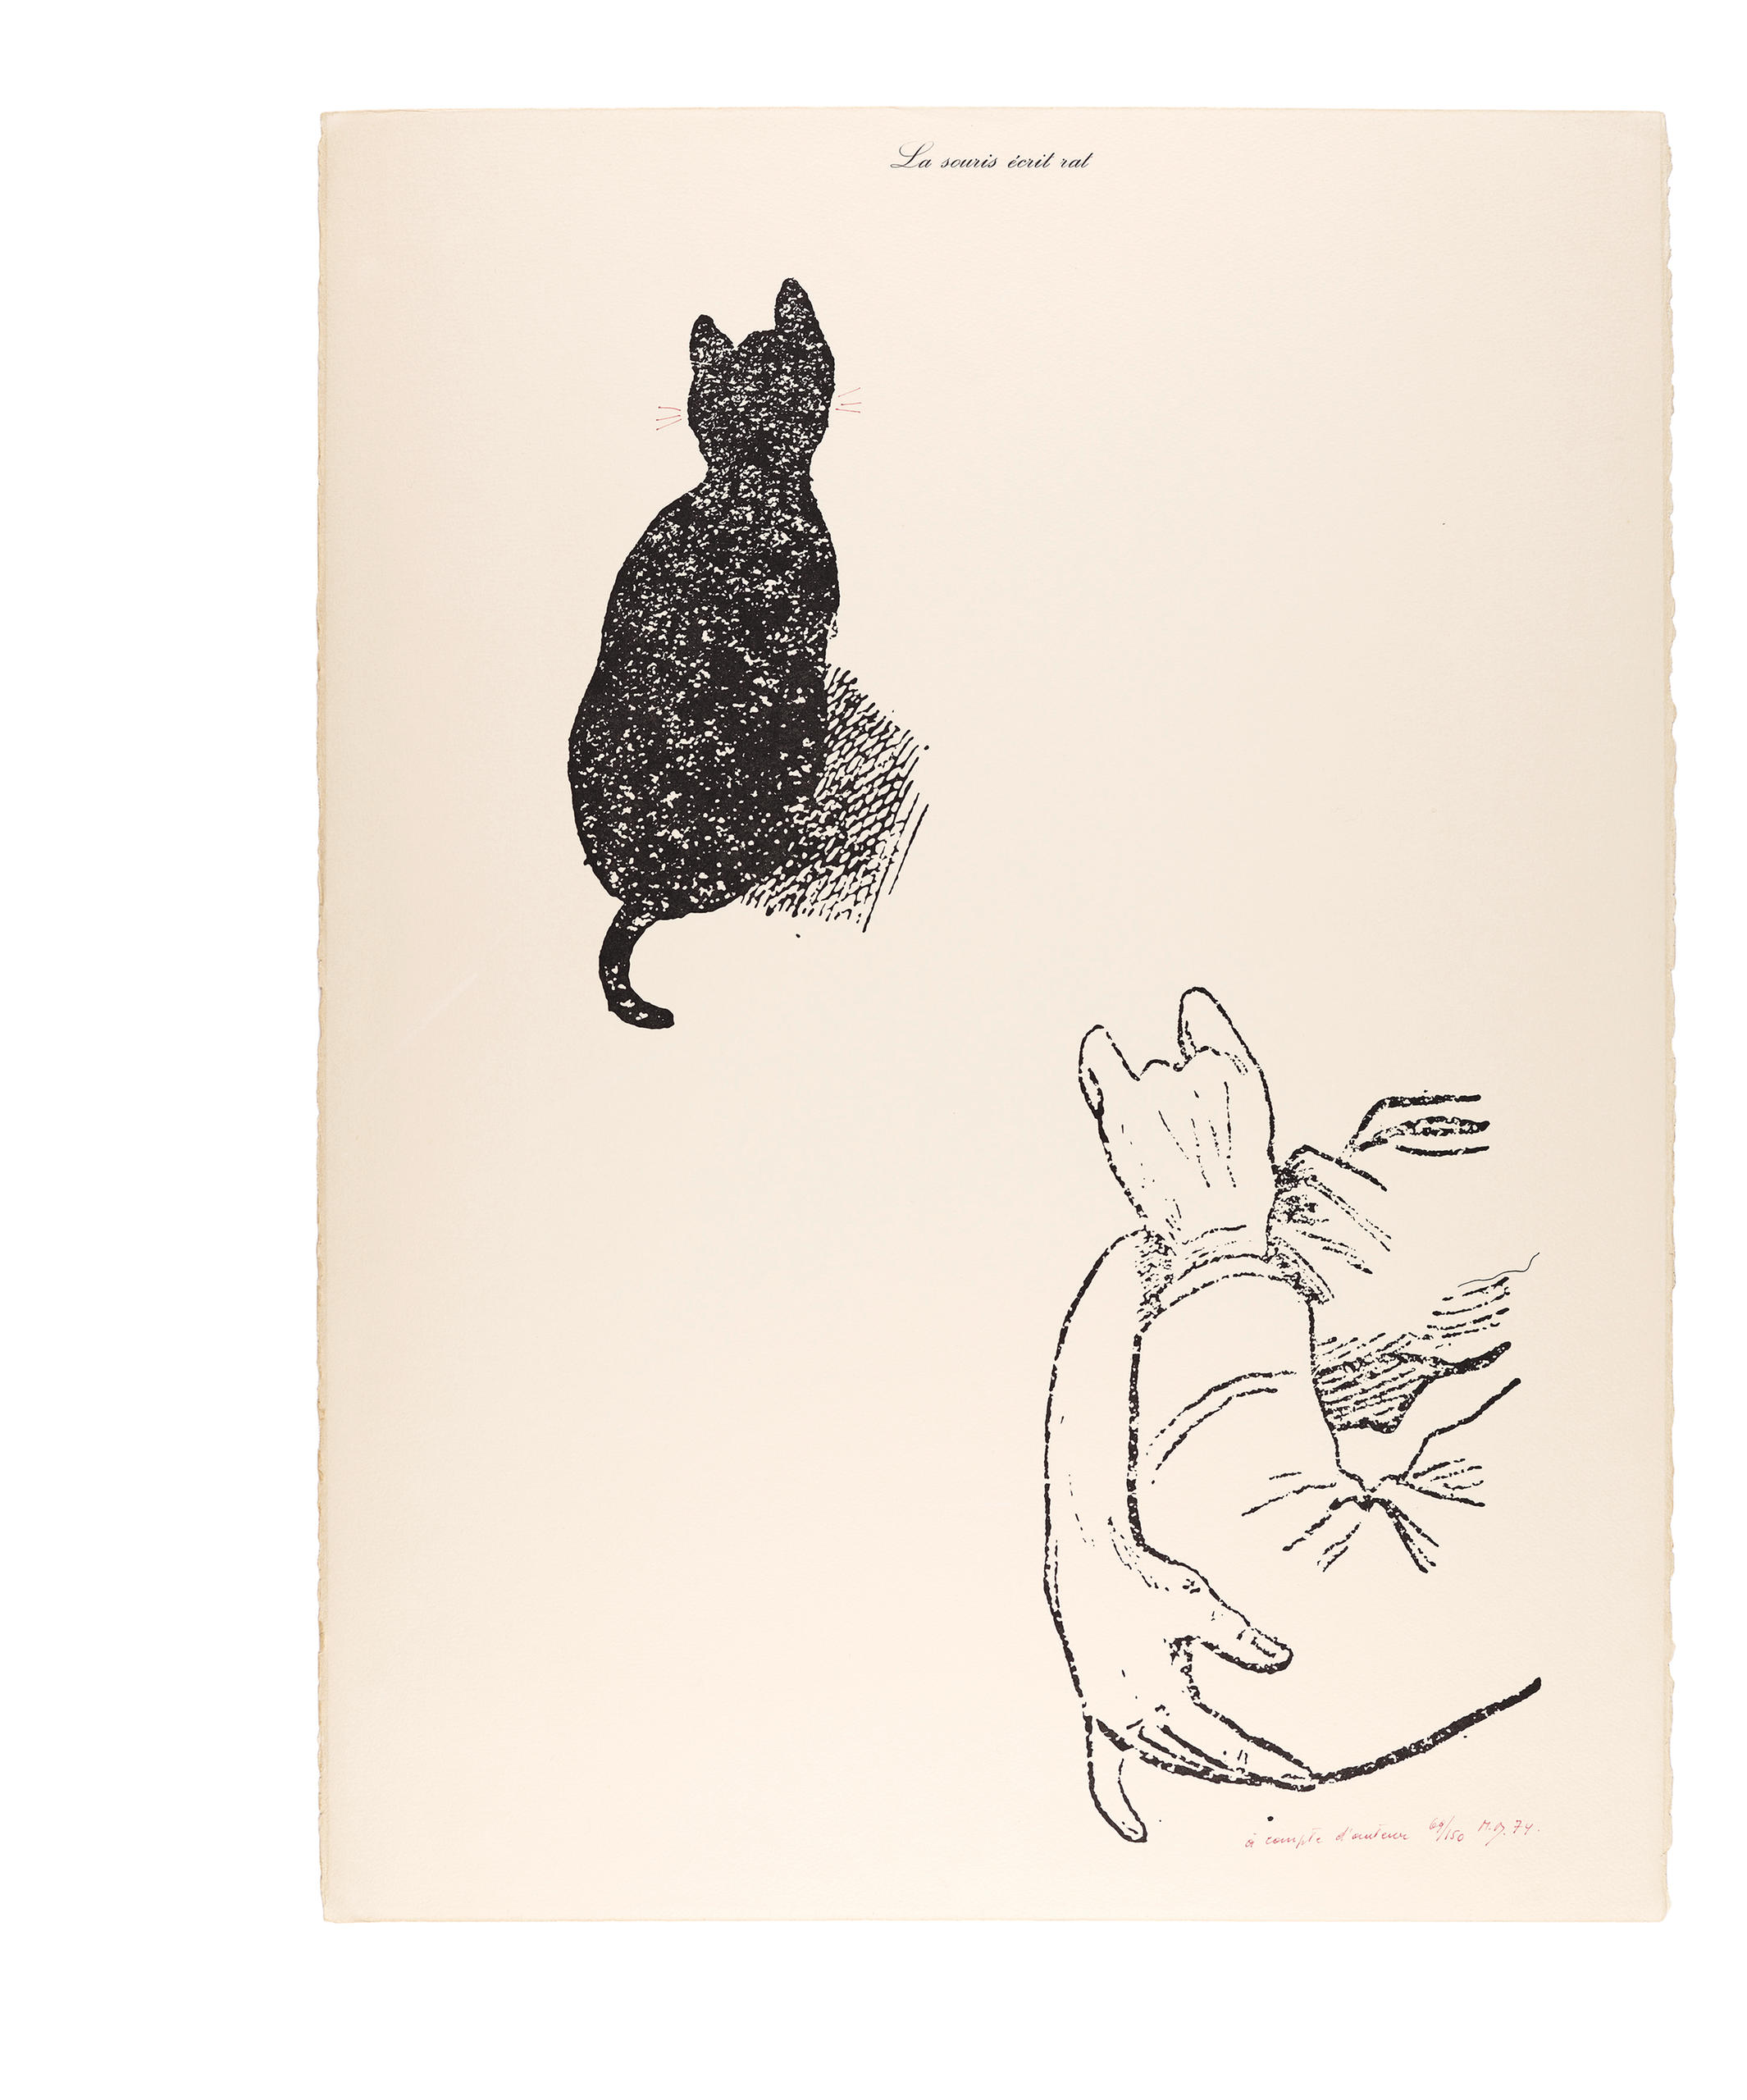 マルセル・ブロータス「La souris écris rat 『à compte d’auteur』（英題 The mouse writes rat 『on behalf of the other』、ネズミが『作者の代わりに』ラットを書く）」、1974年